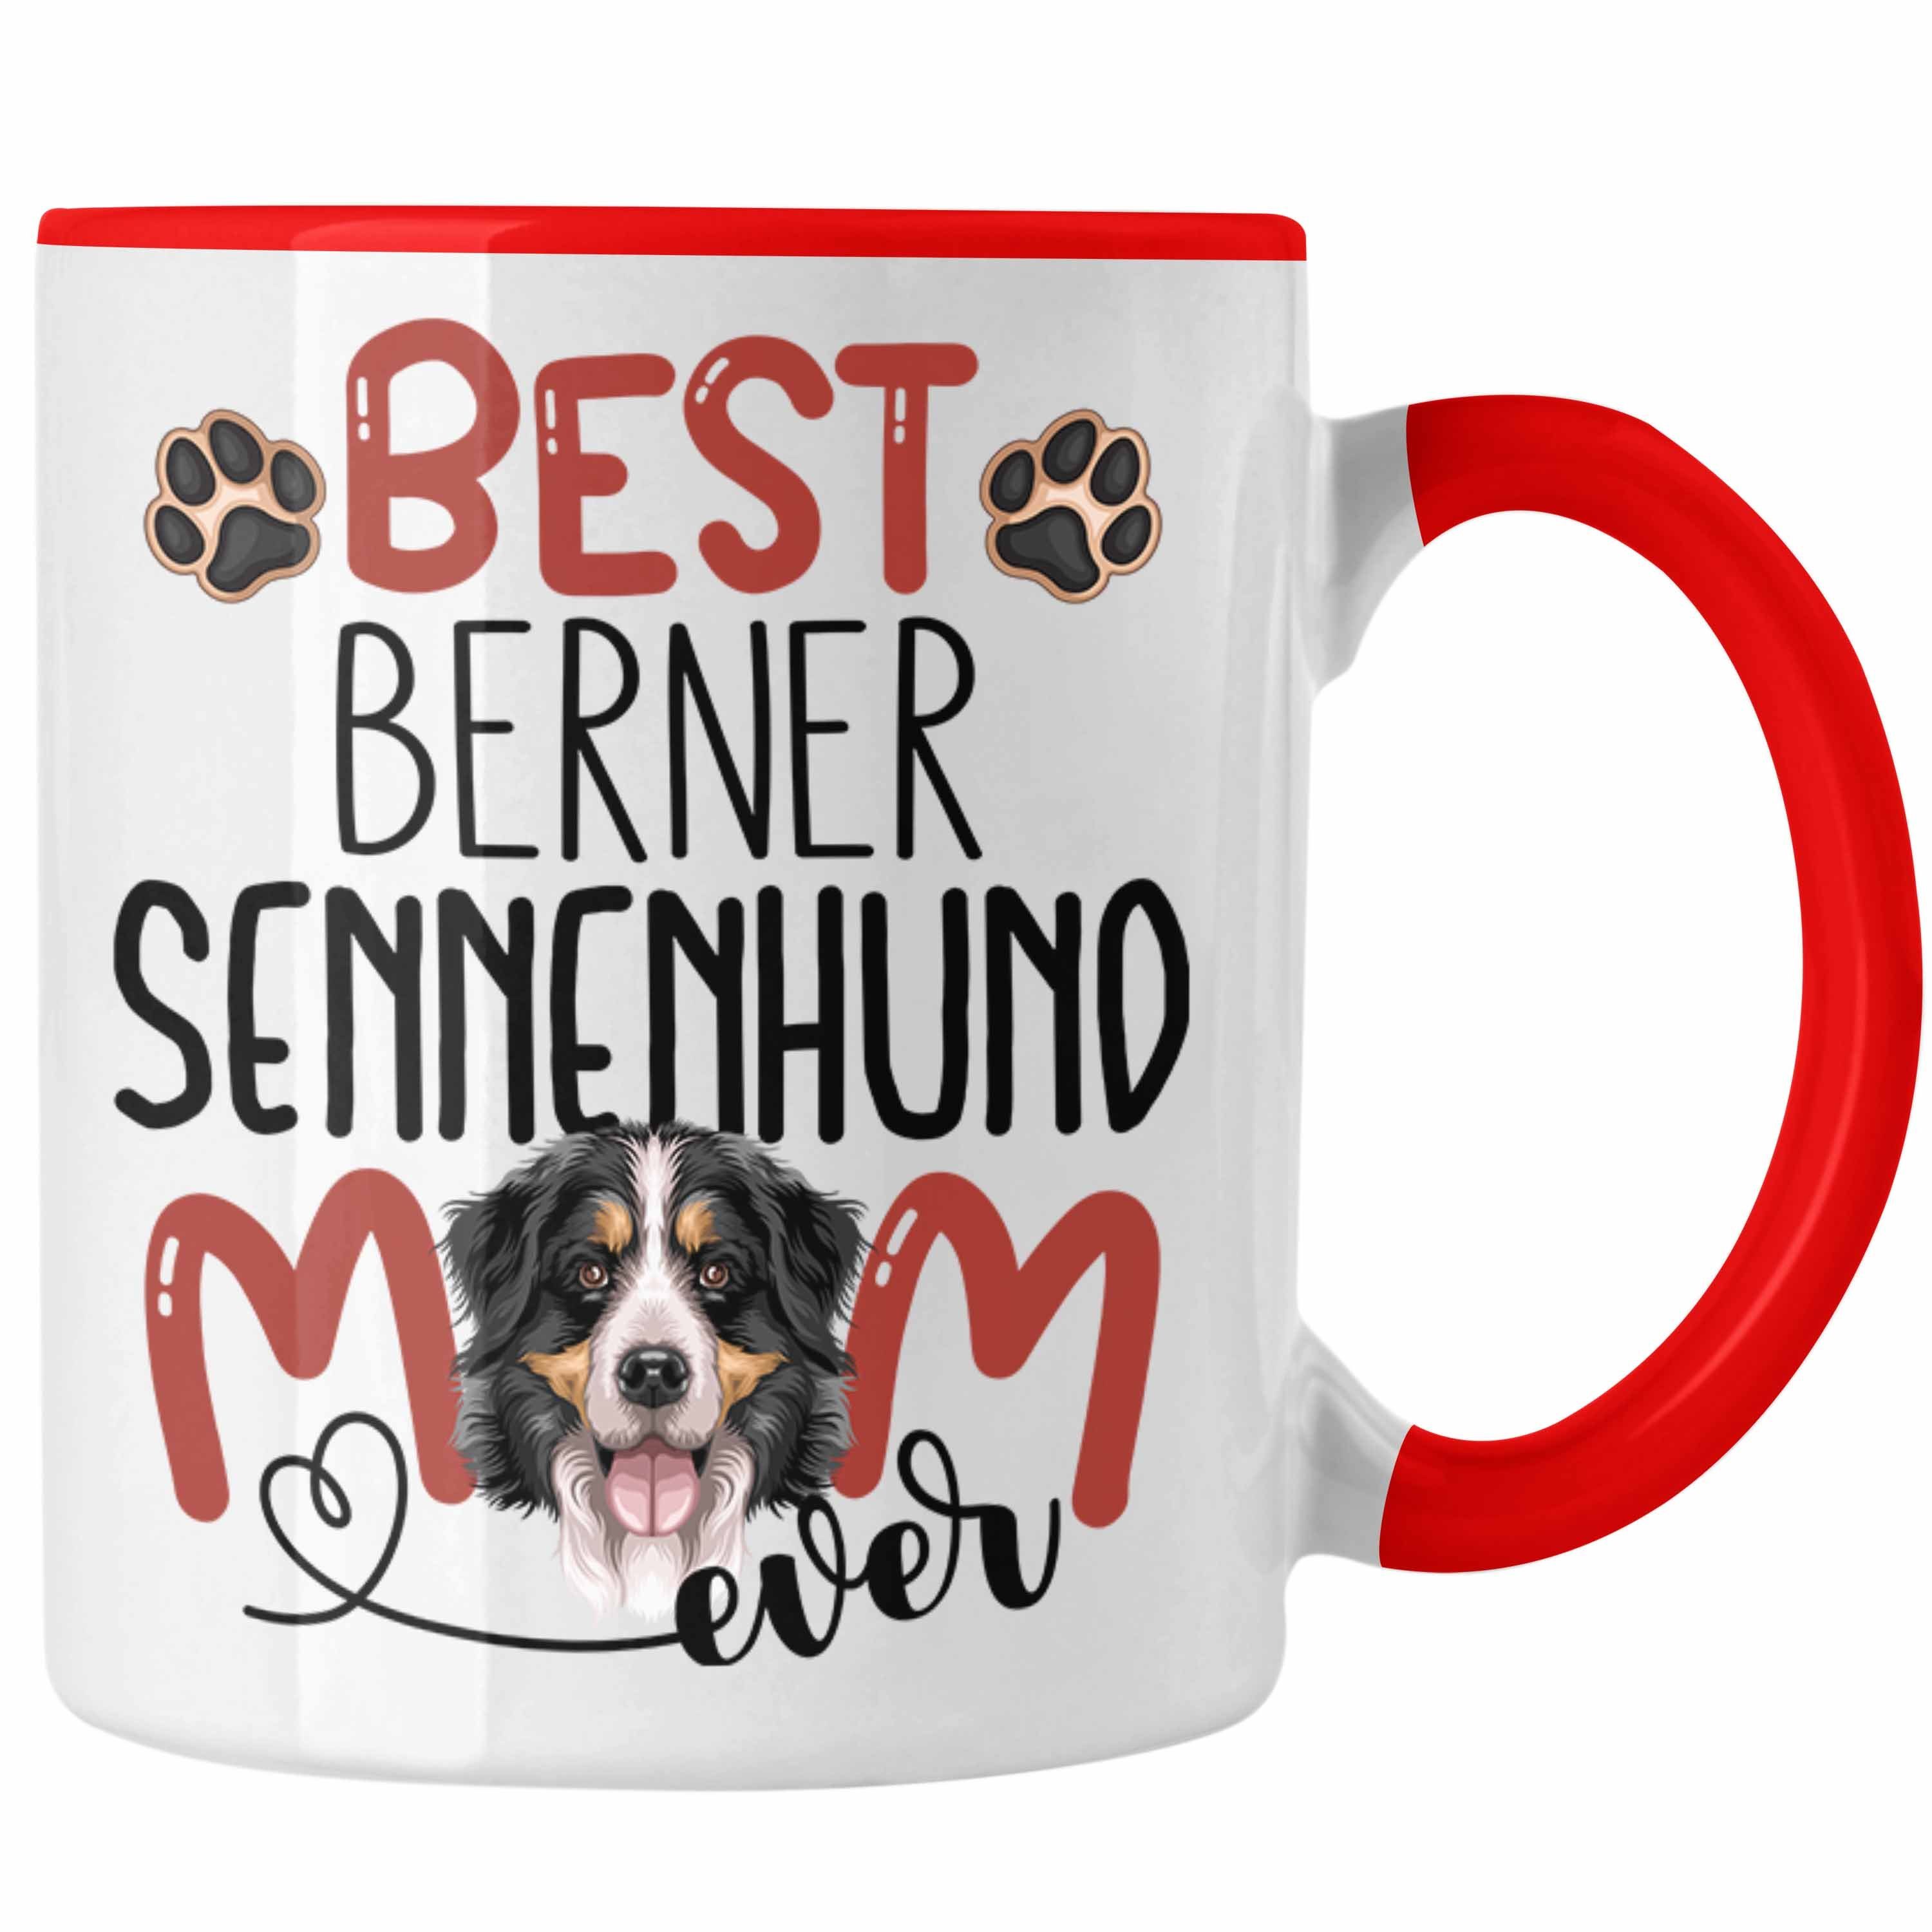 Gesche Trendation Besitzerin Tasse Sennenhund Geschenk Rot Lustiger Mom Berner Tasse Spruch